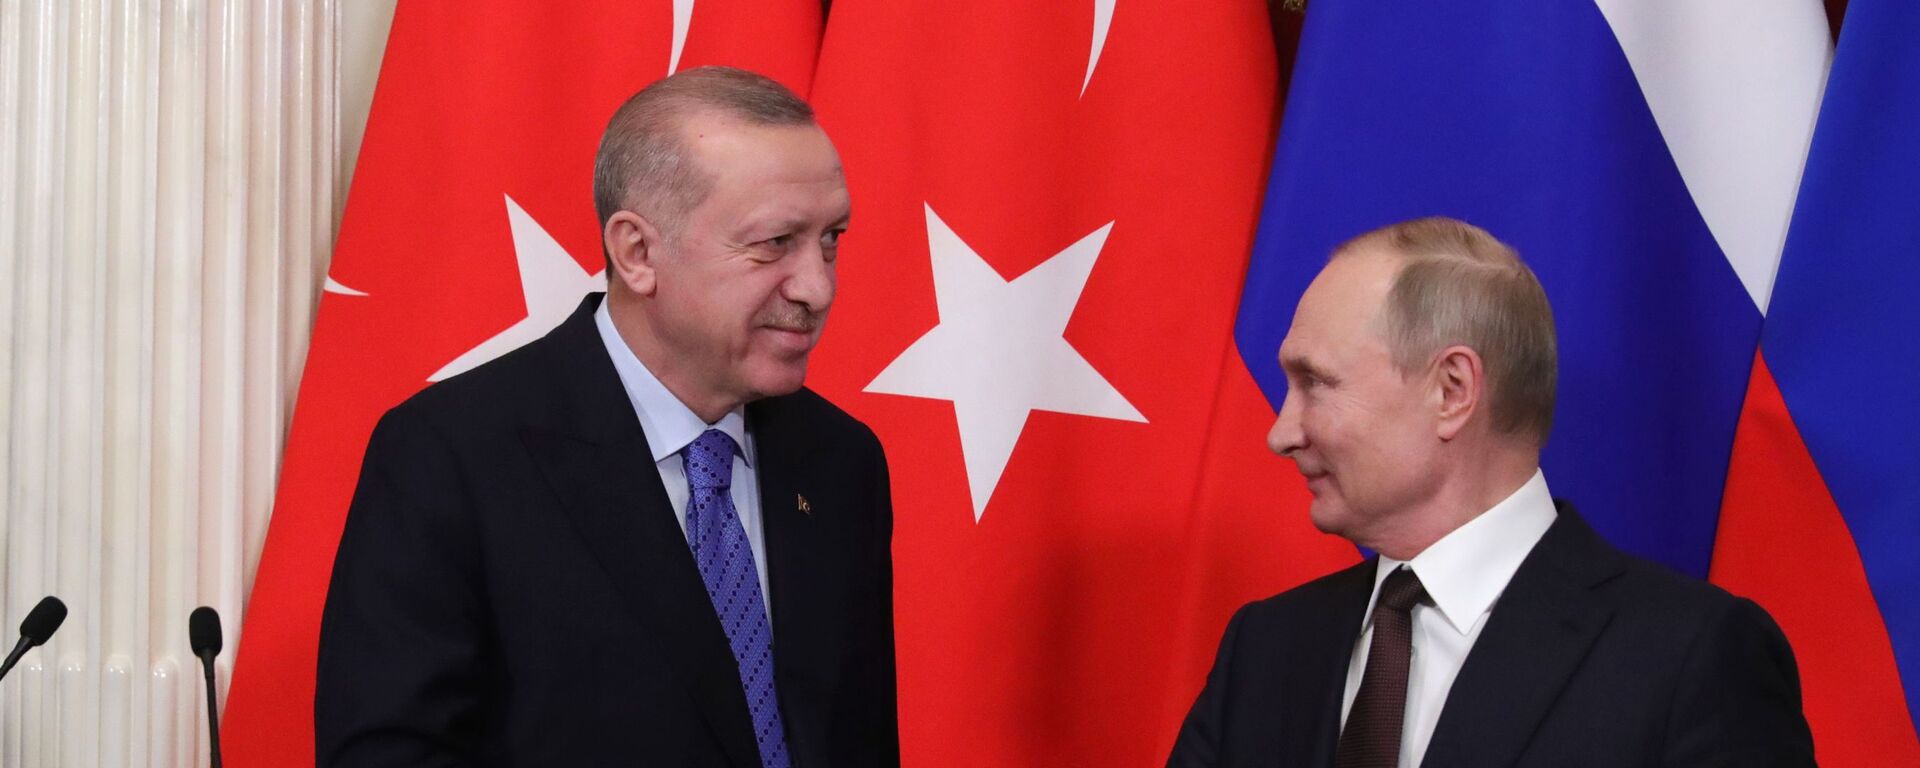 Cuộc gặp giữa Tổng thống Nga Vladimir Putin và Tổng thống Thổ Nhĩ Kỳ Recep Tayyip Erdogan tại Điện Kremlin, Matxcơva  - Sputnik Việt Nam, 1920, 19.09.2022